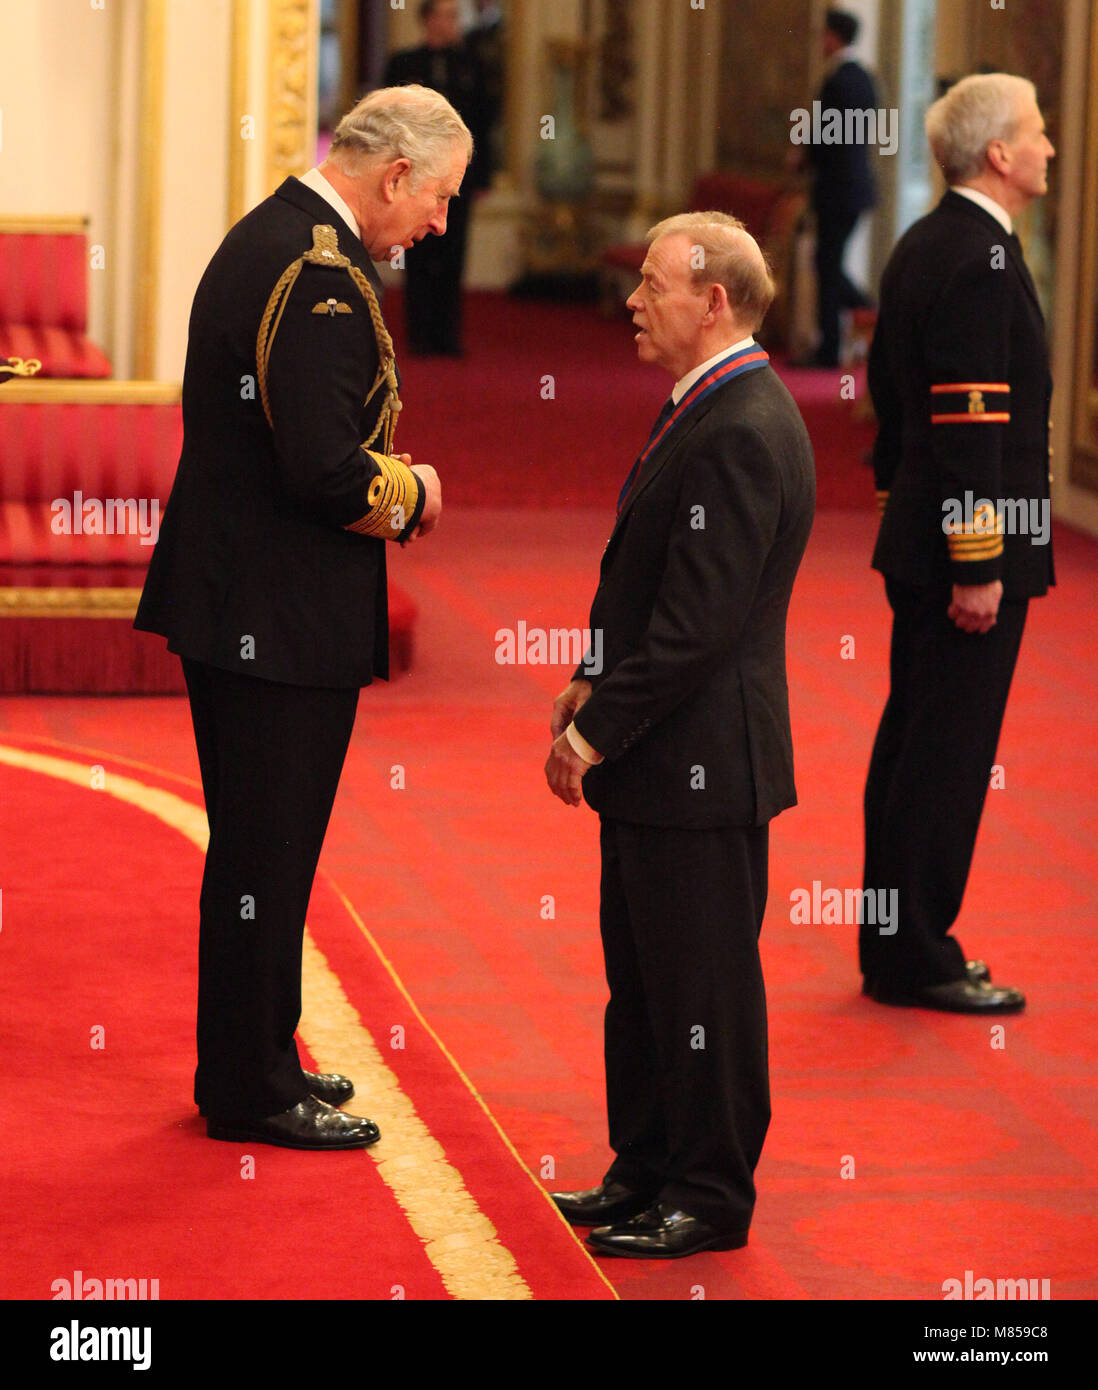 John Cummins de Bury St Edmunds est fait Compagnon de l'Ordre de St Michel et St George par le Prince de Galles au cours d'une cérémonie à Buckingham Palace. Banque D'Images